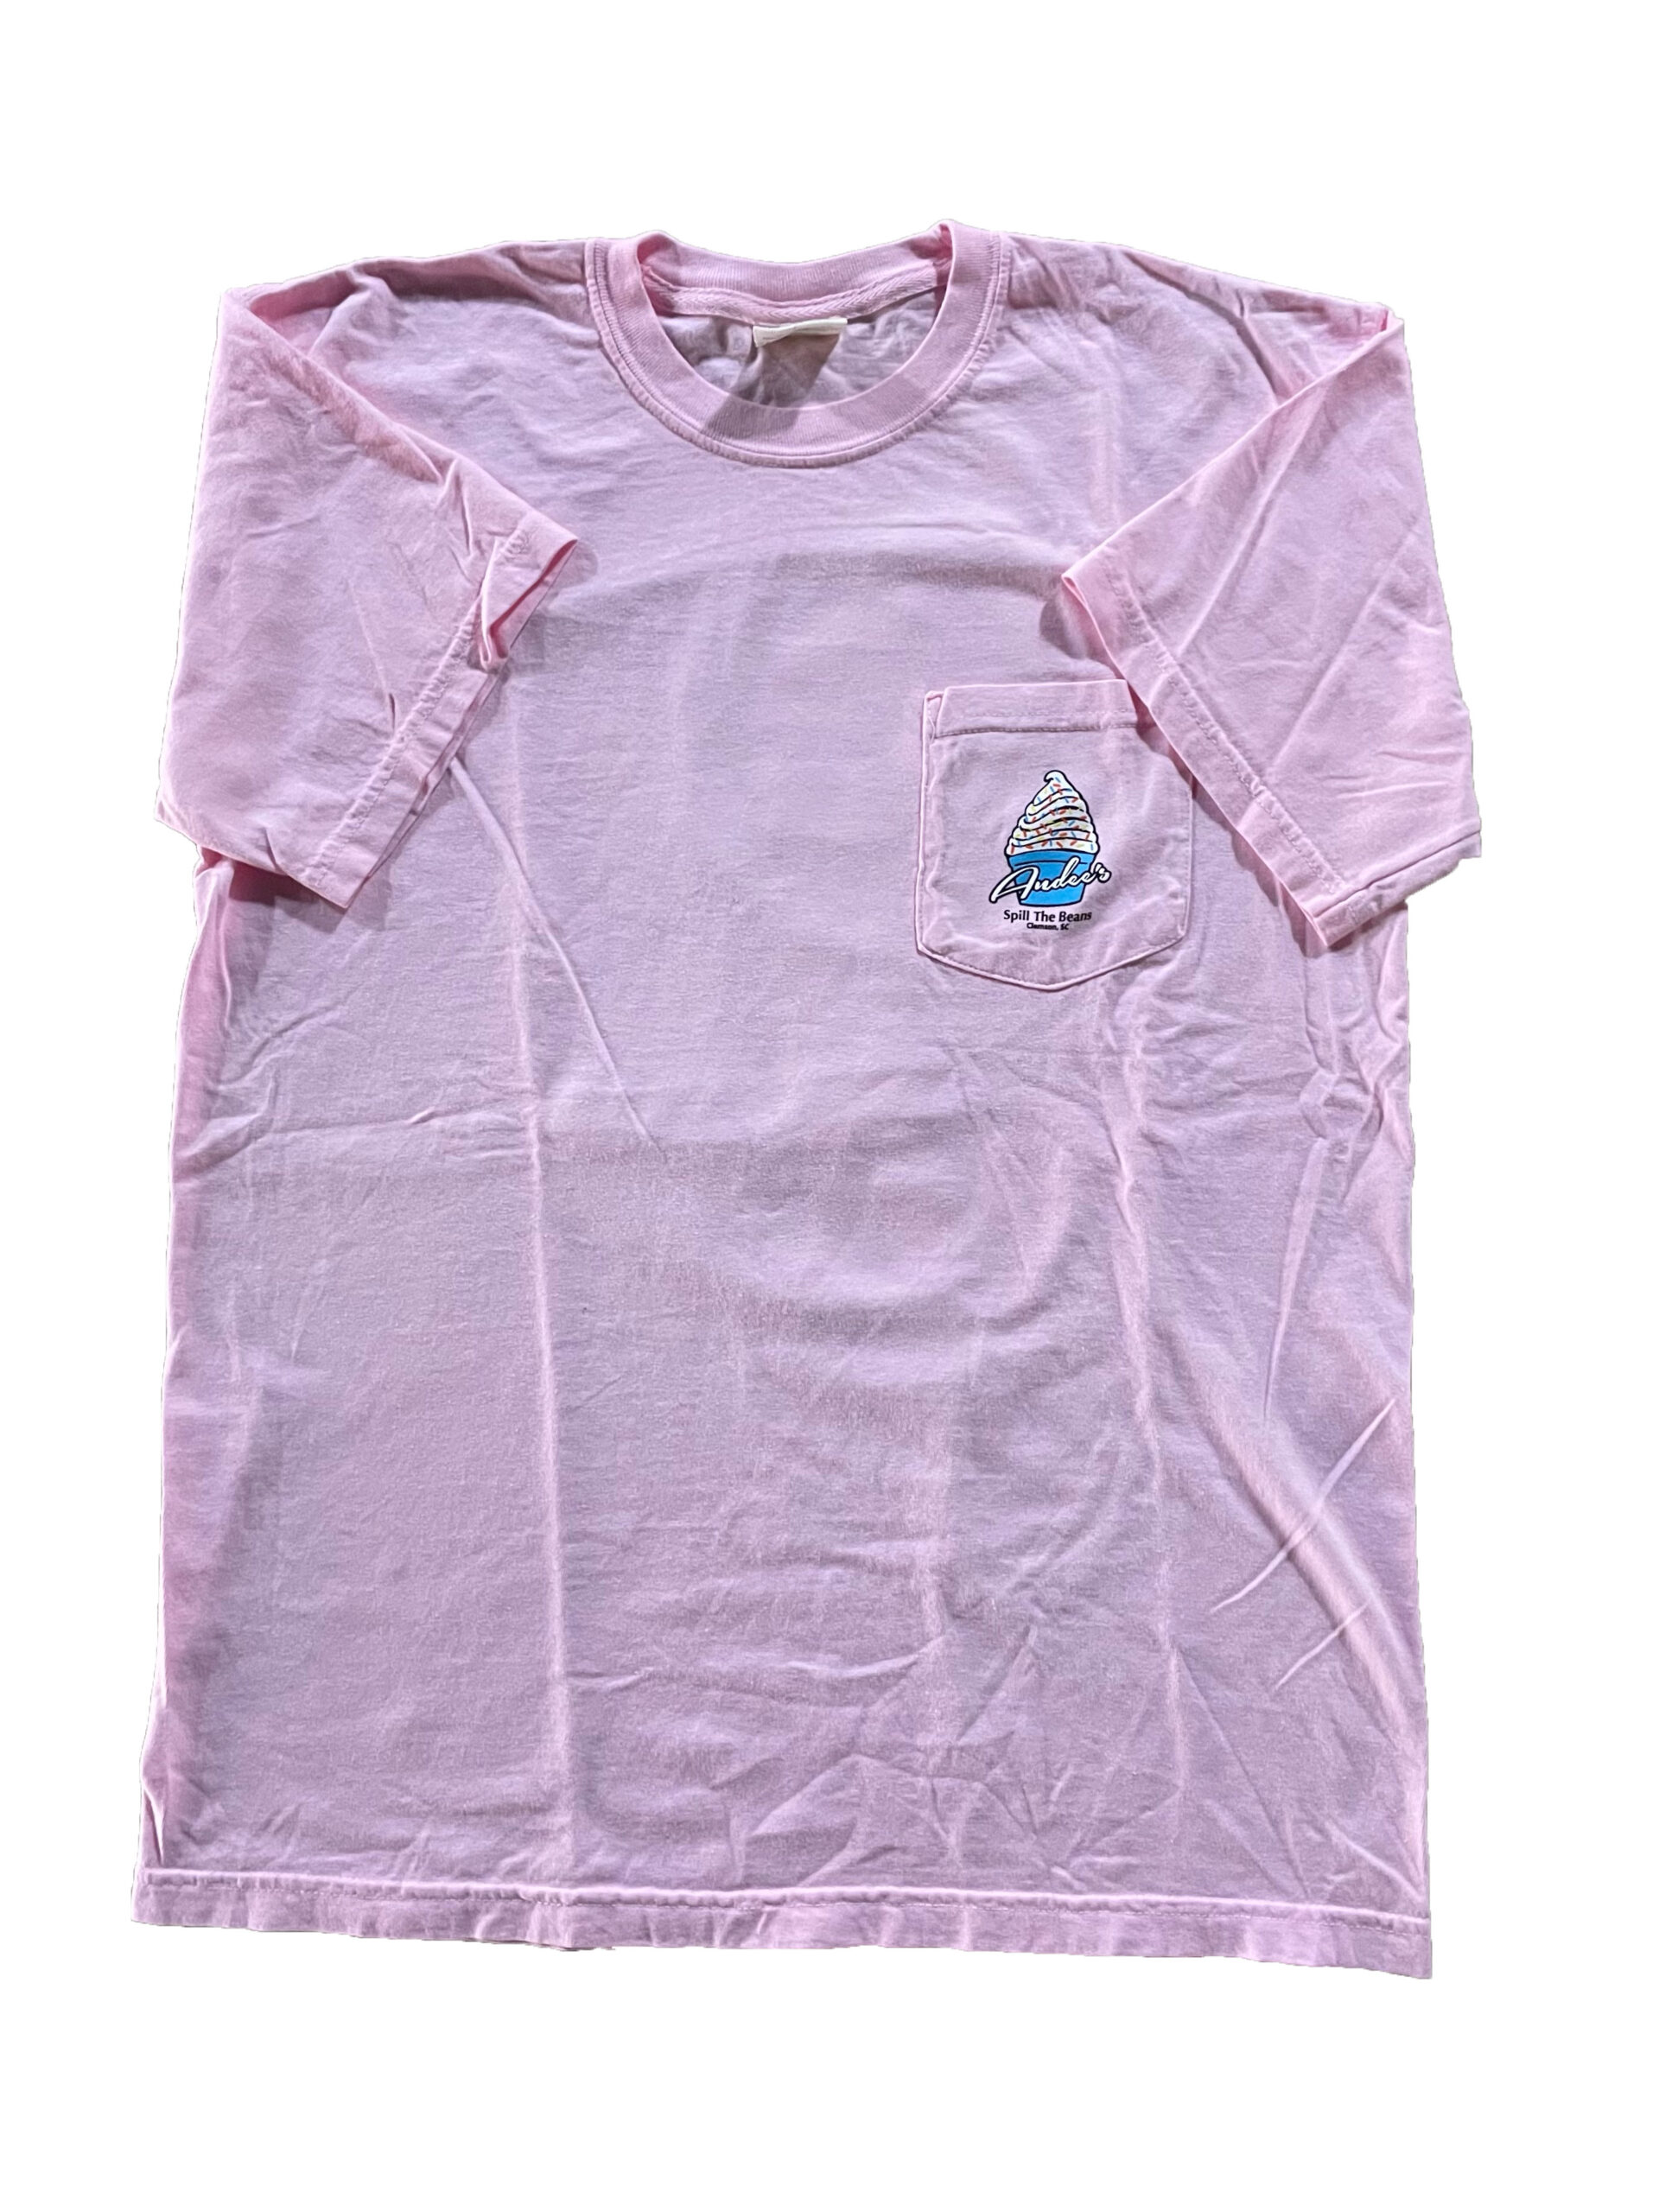 Rose Pink Comfort Color Tee - Front (Merchandise)